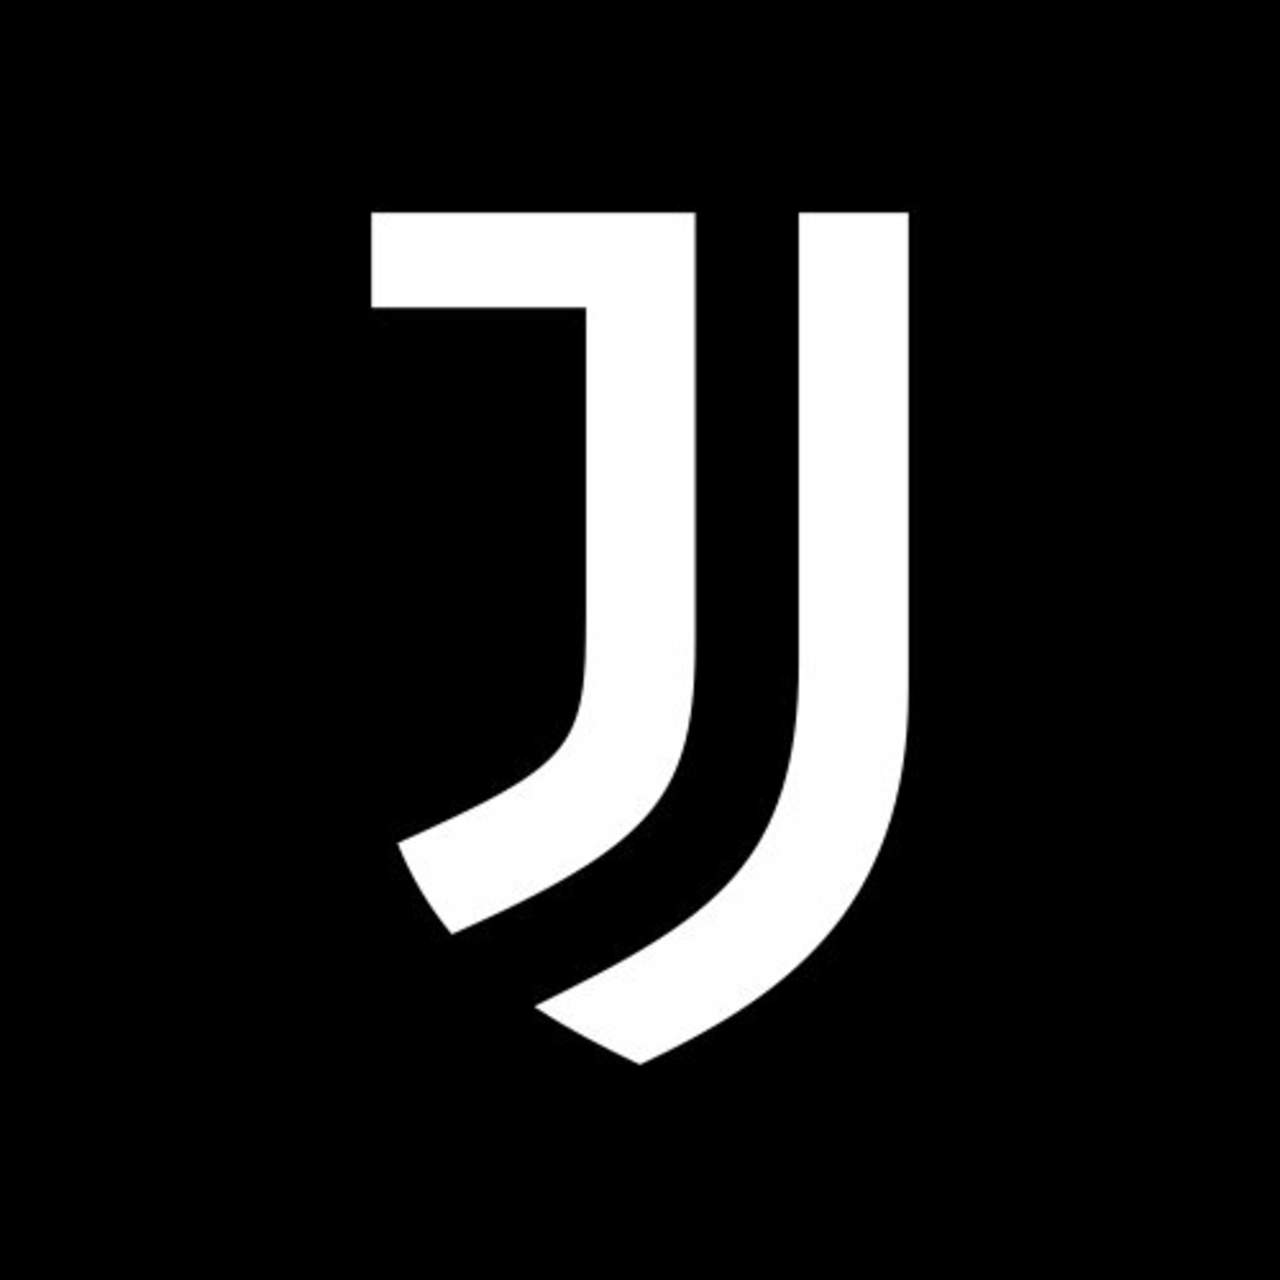 Juventus criticado por nuevo logotipo, El Siglo de Torreón